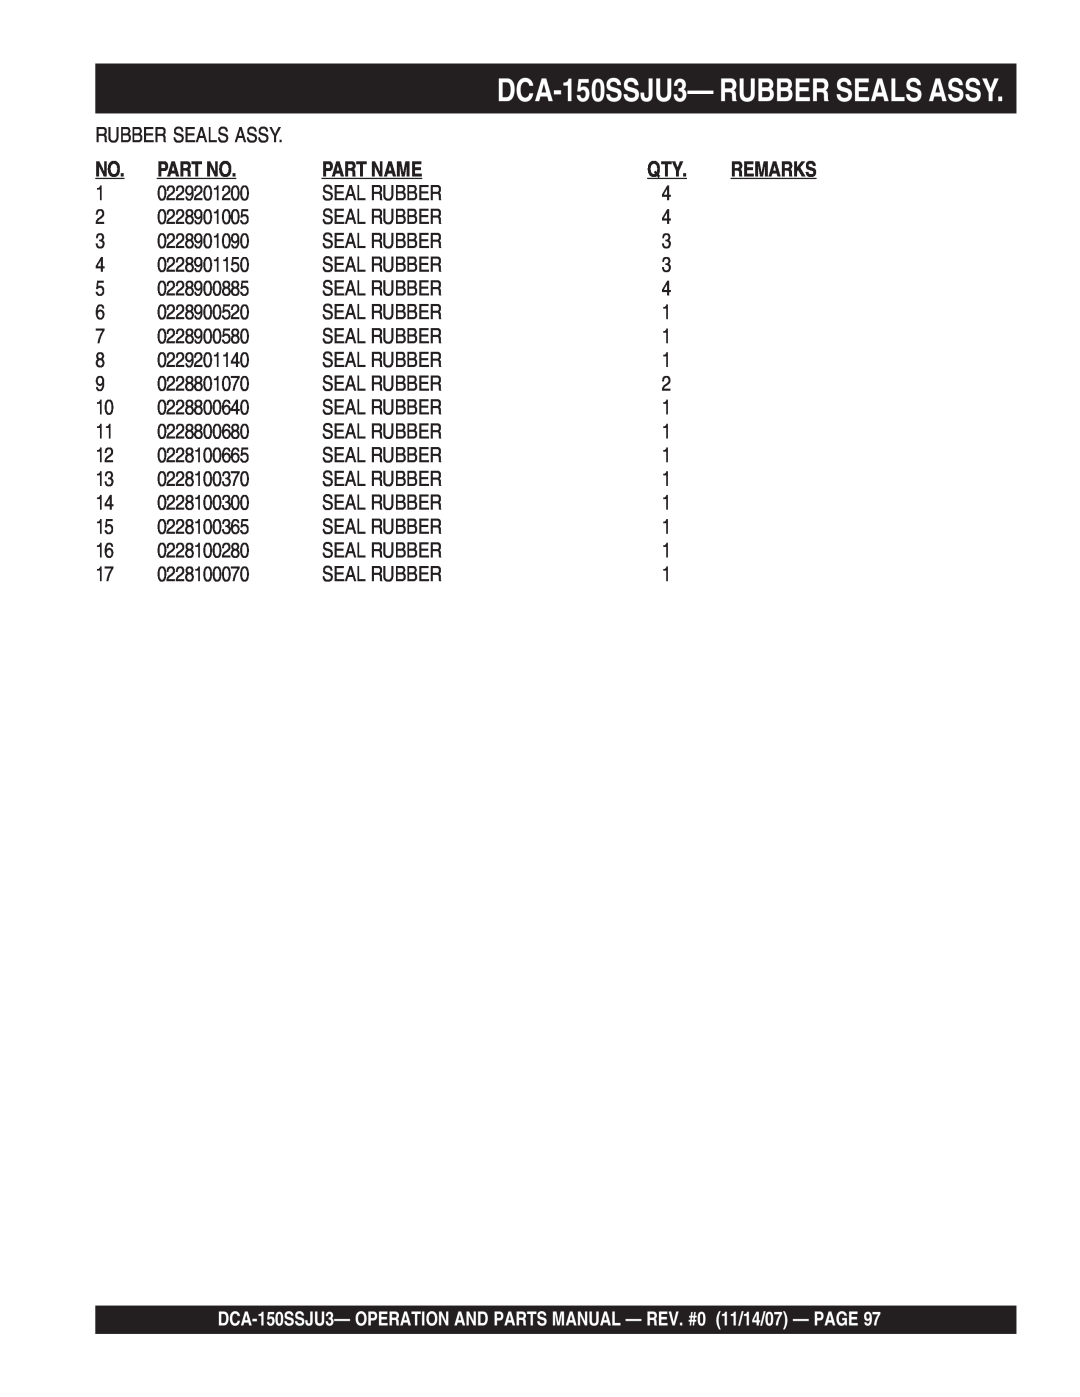 Multiquip operation manual DCA-150SSJU3—RUBBER SEALS ASSY, Part No, Part Name, 0229201200 